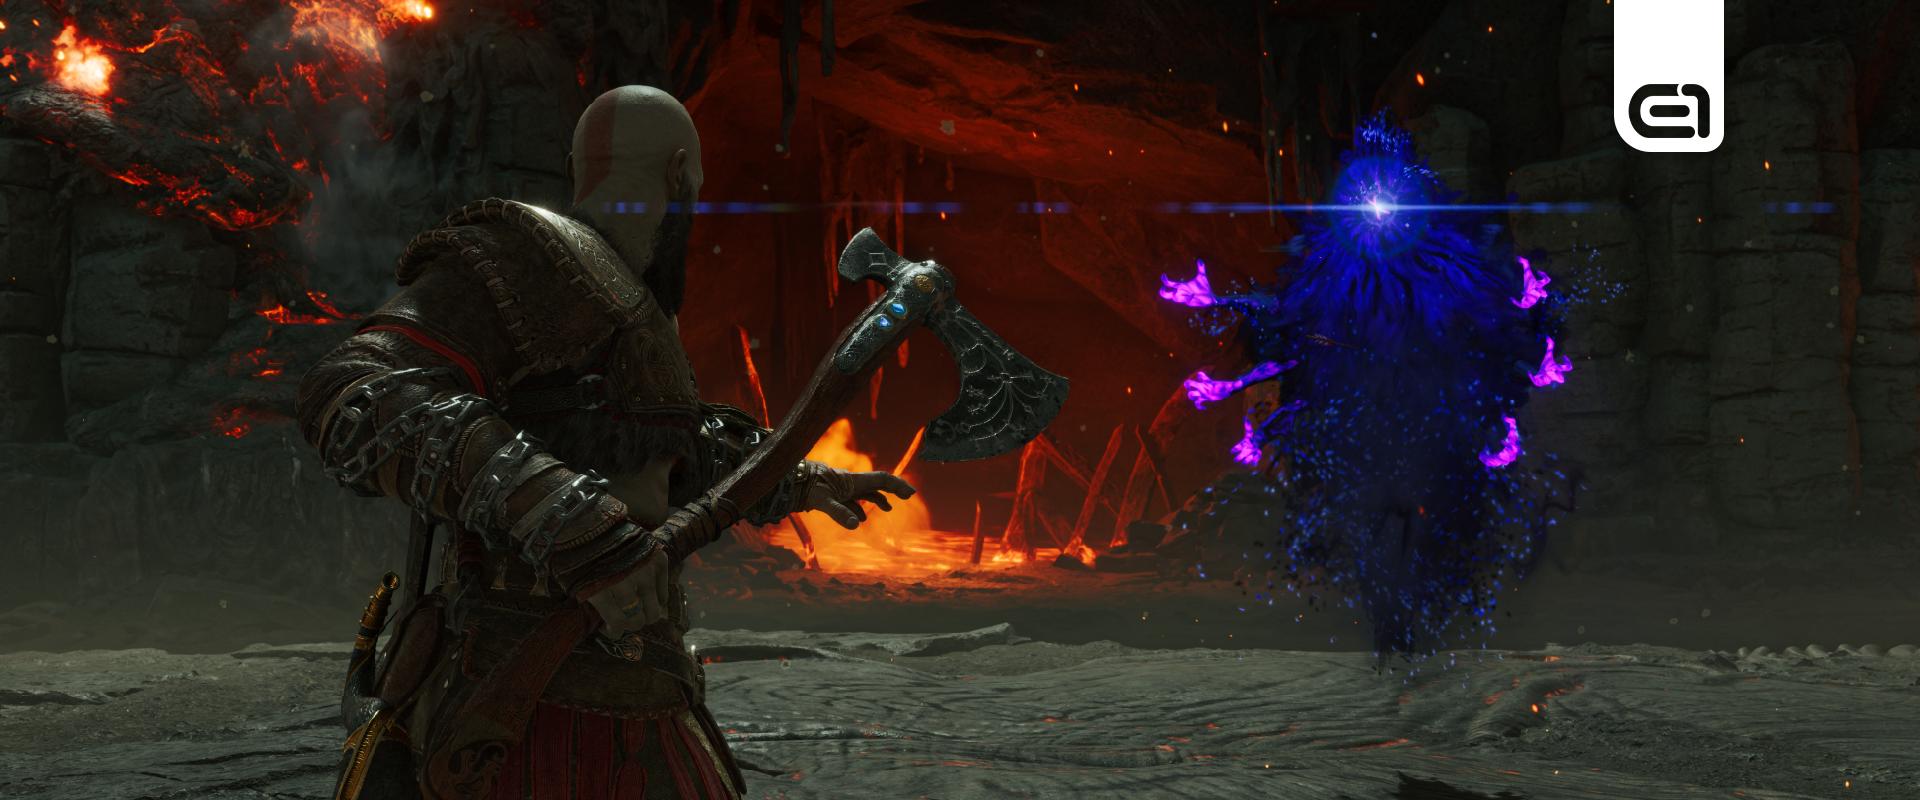 God of War: Nagyon más lett volna Kratos sorsa az eredeti történet szerint